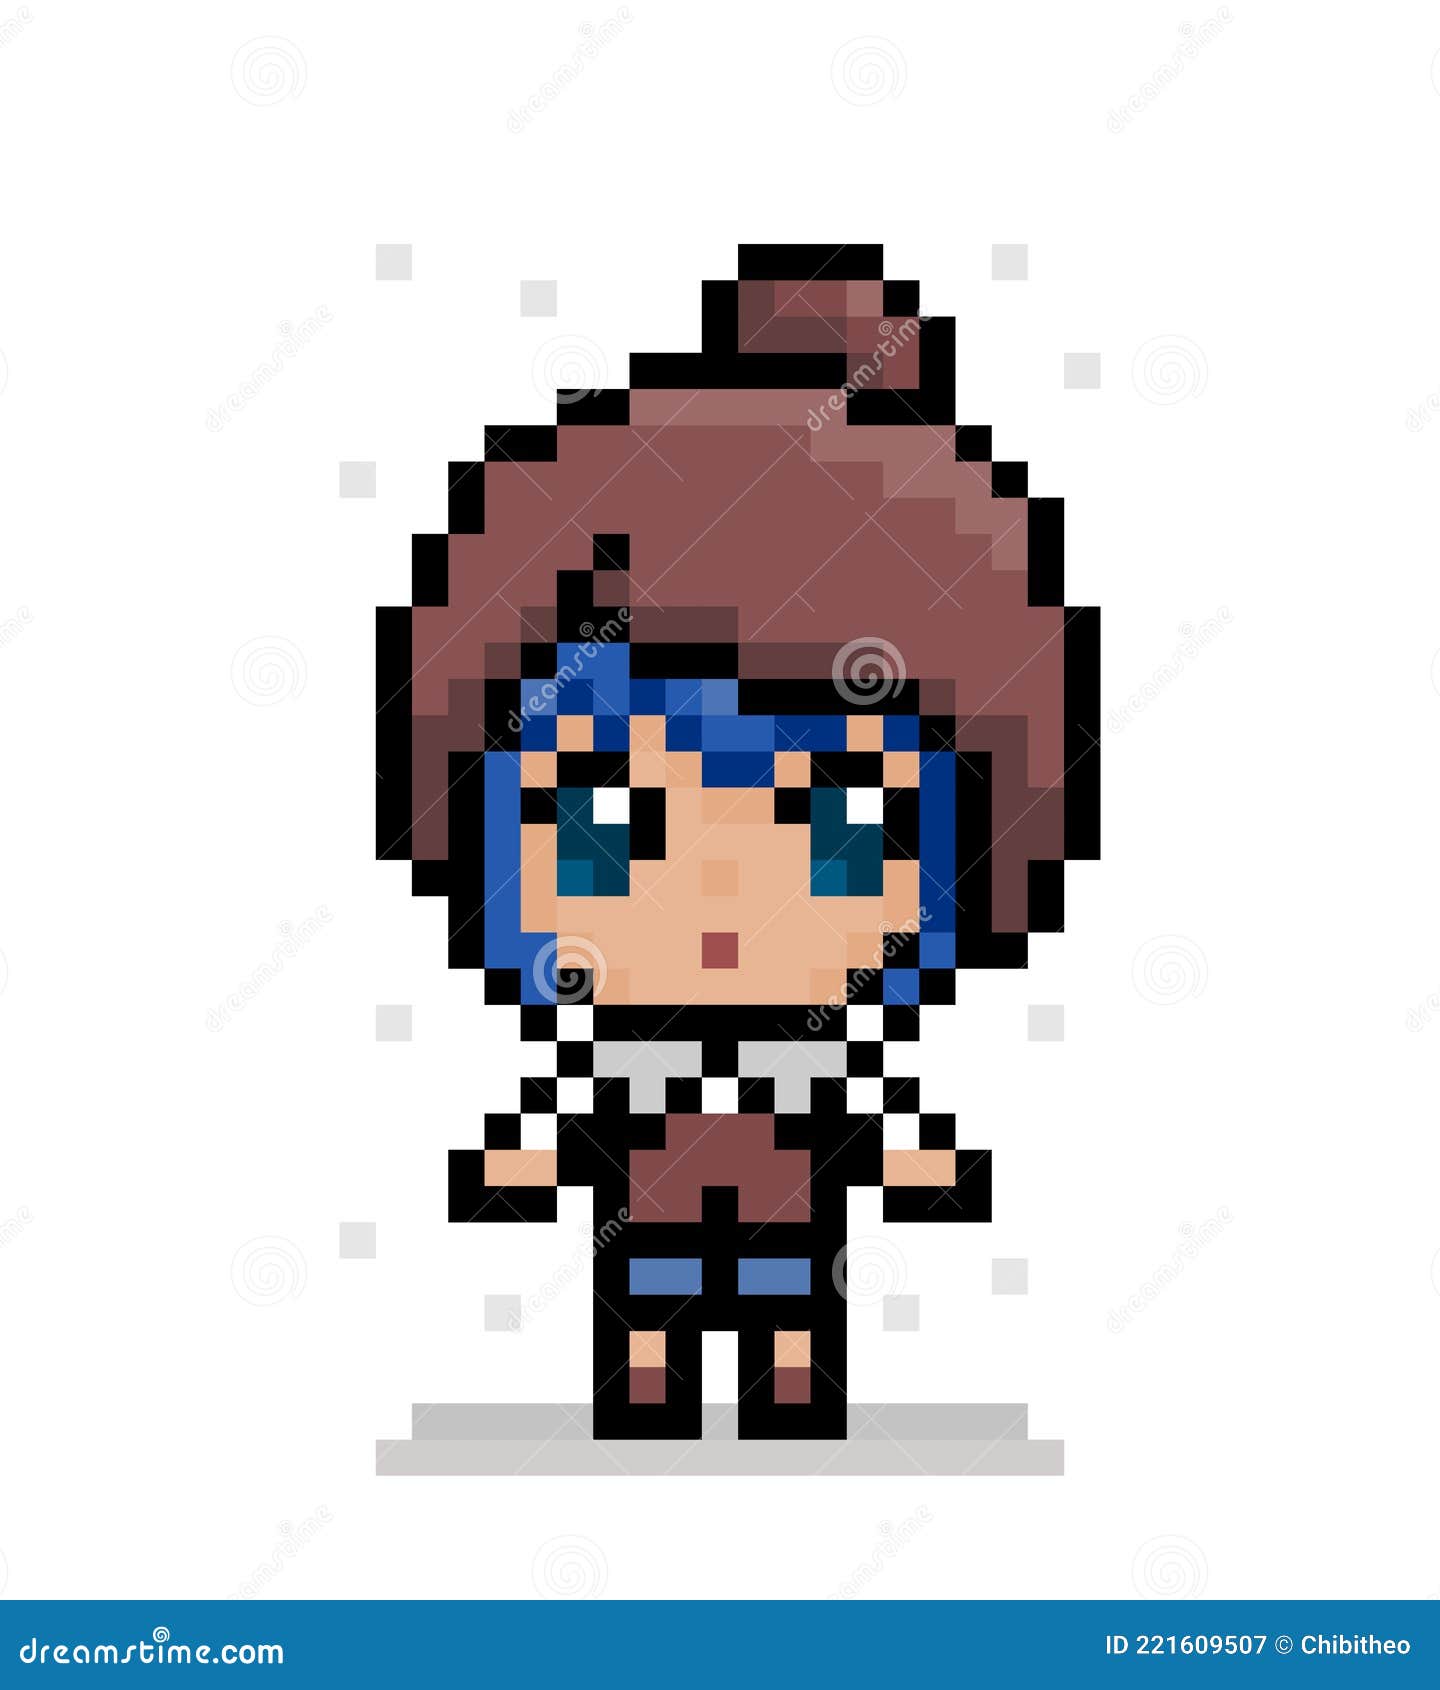 Do pixel art anime characters by Anpixelartist | Fiverr